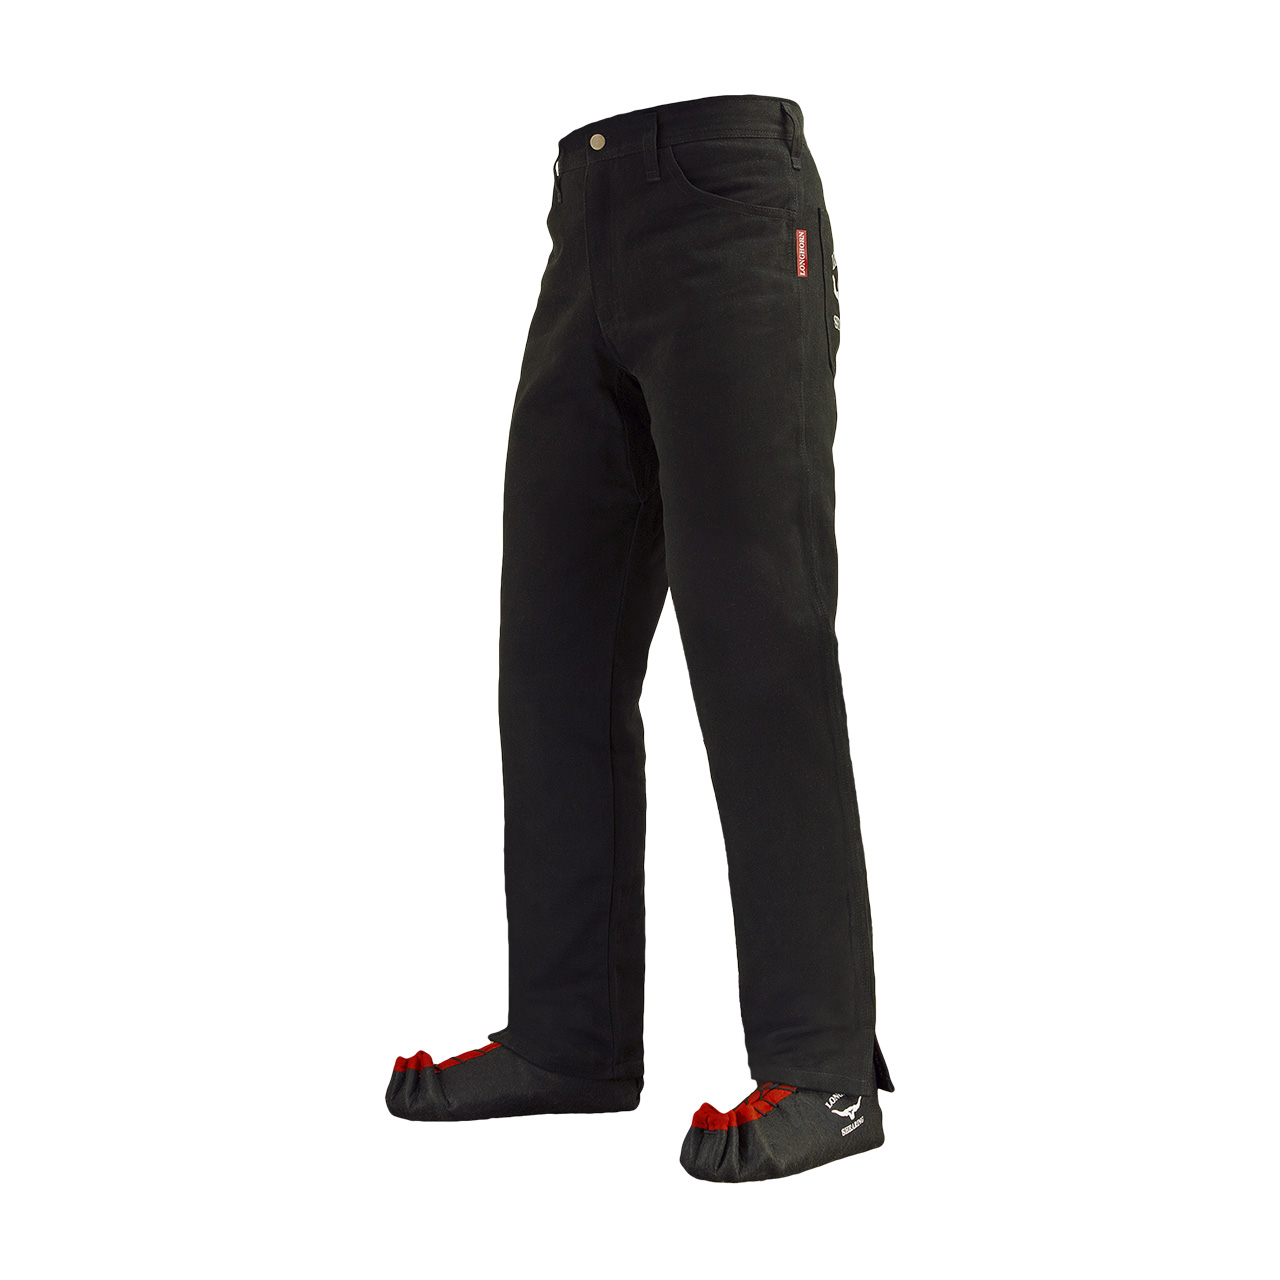 Longhorn™ kalhoty pro střihače ovcí s 2 předními kapsami velikost Stout 42/33 (7 1/4)